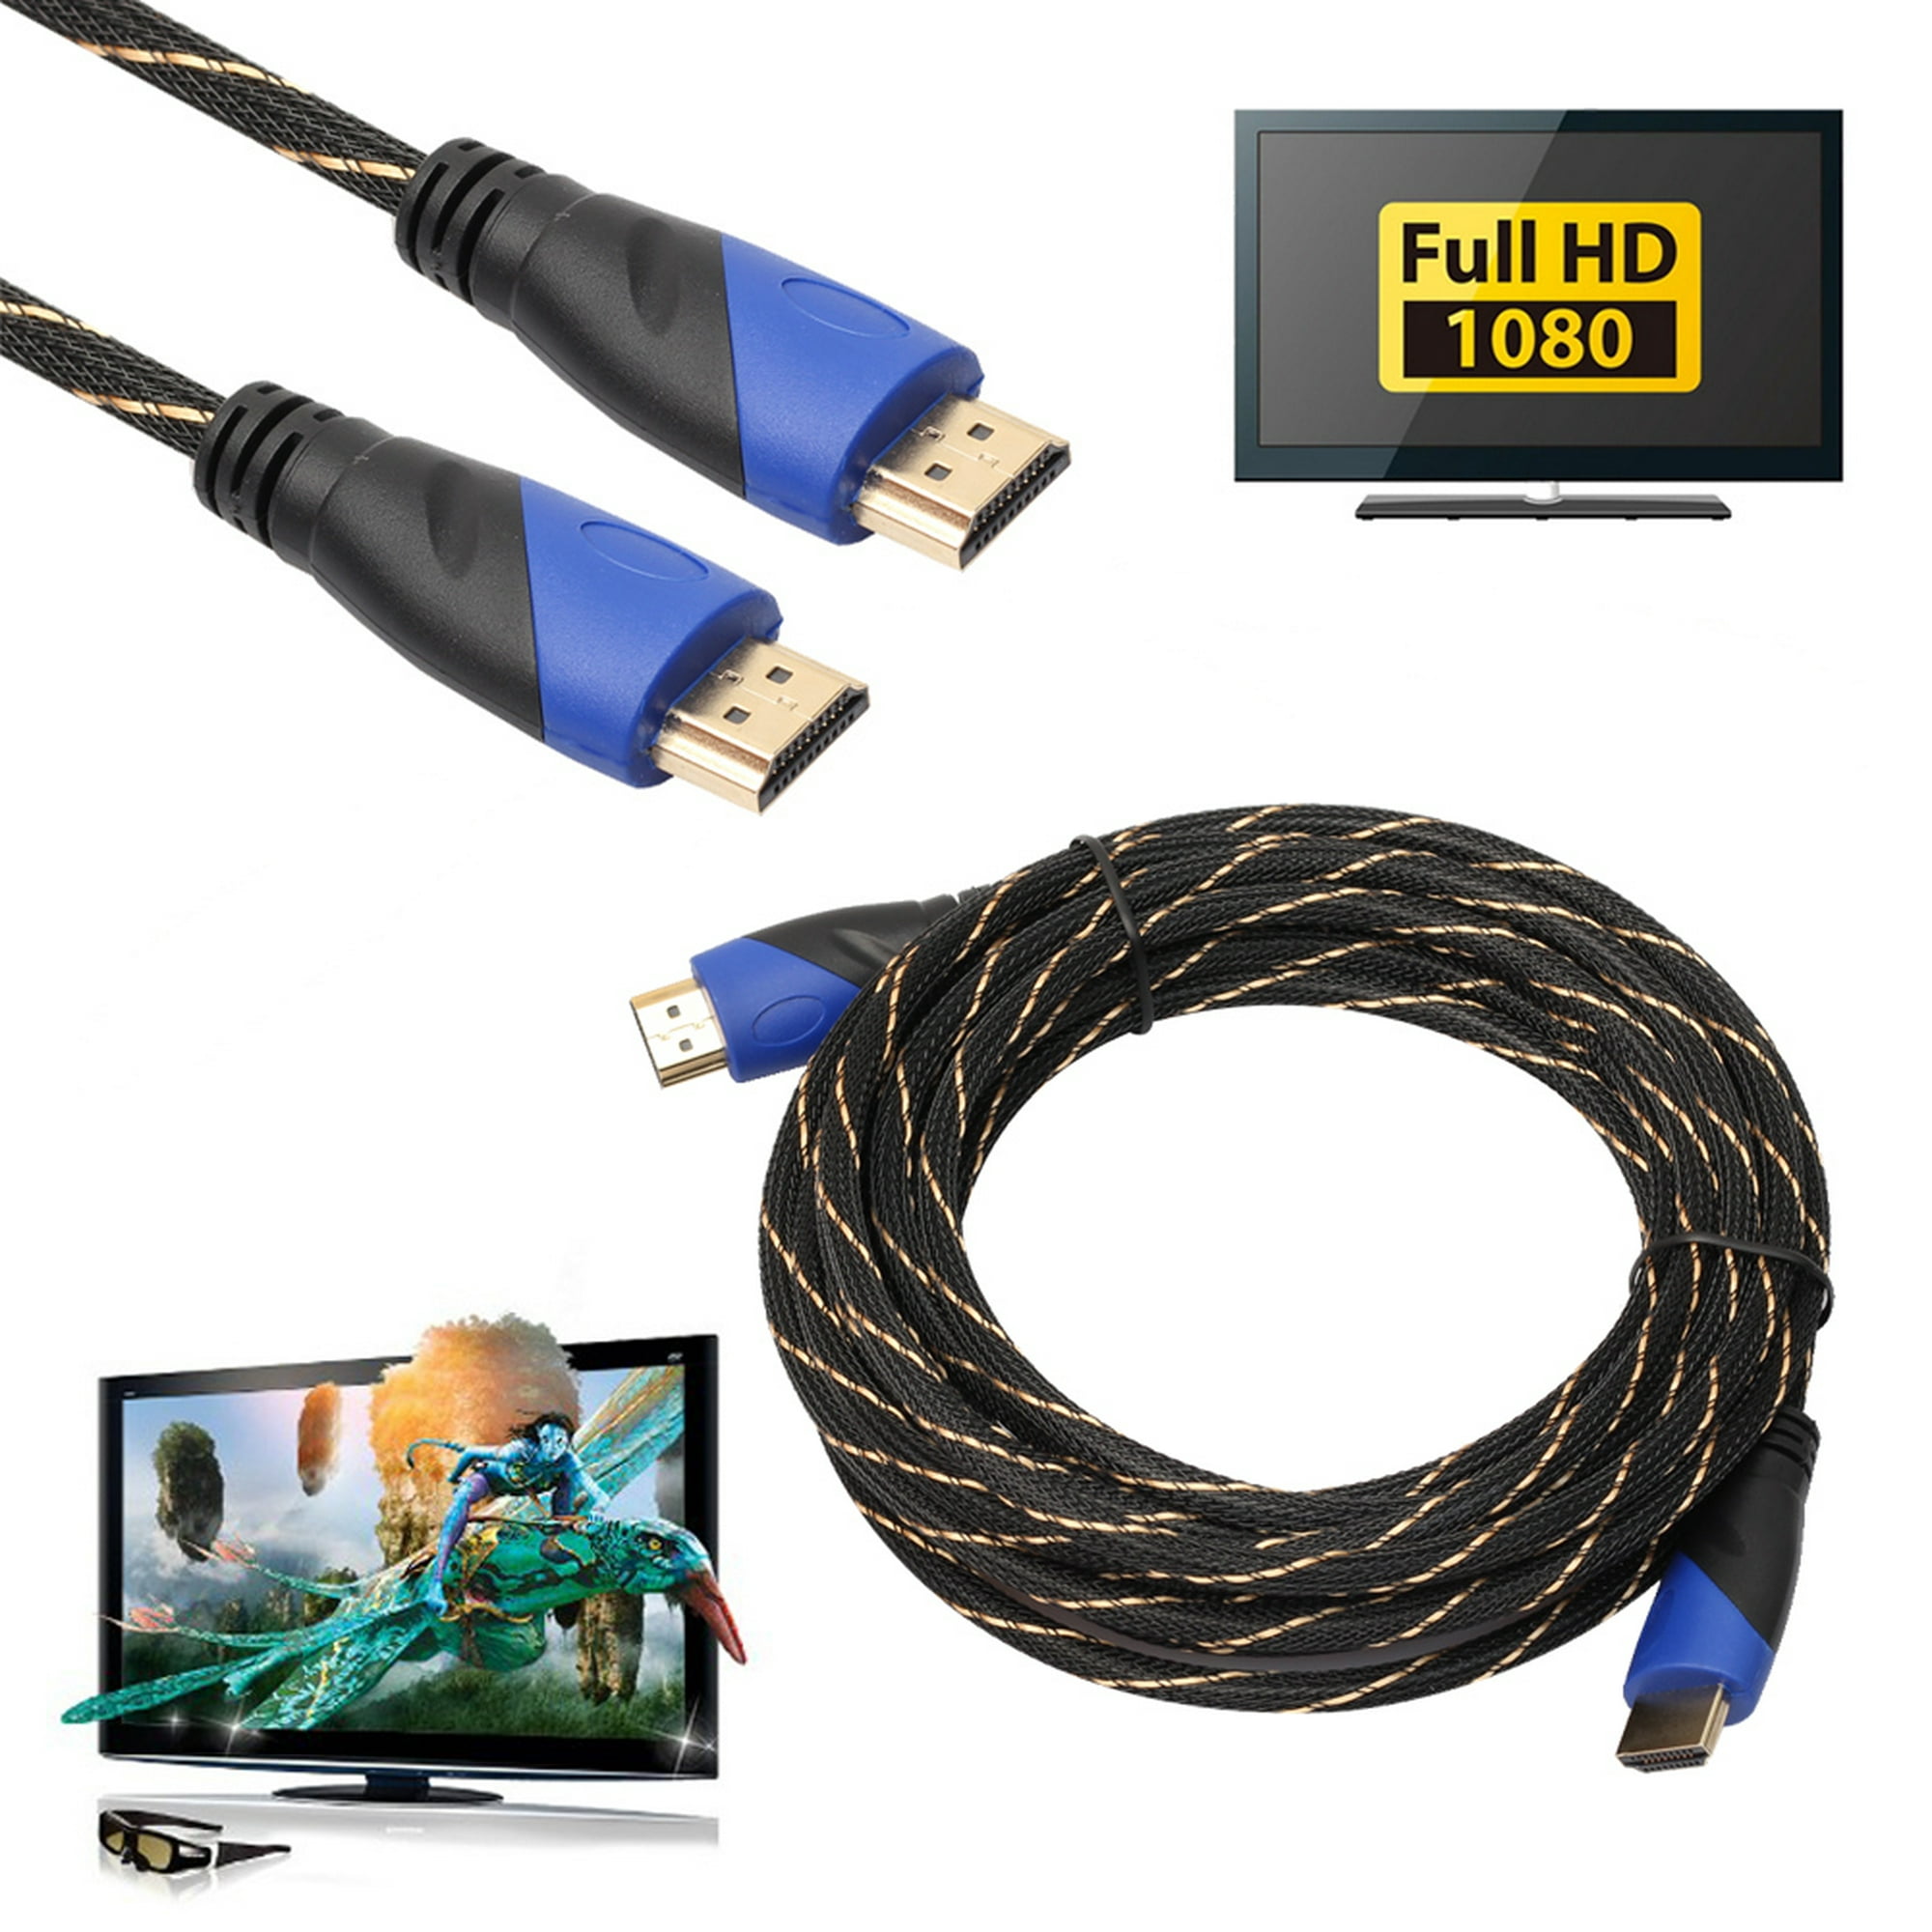 Cable Conexion Hdmi 5m Full Hd / 5 Metros Recubierto V1.4